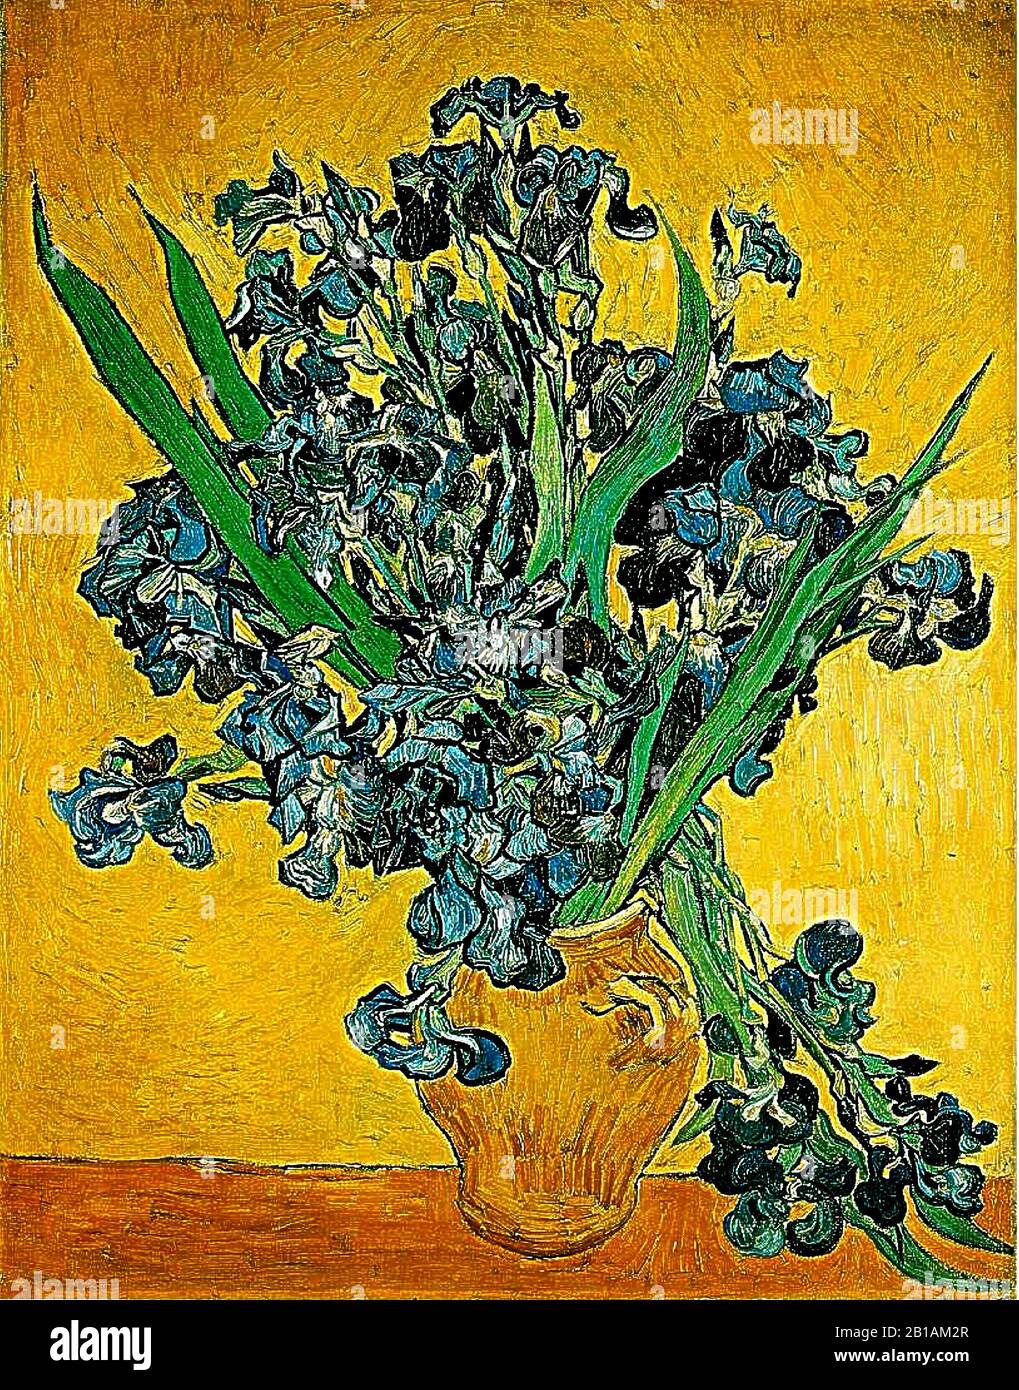 Dipinto del 1890 di Vincent van Gogh - Immagine Ad Altissima risoluzione e qualità Foto Stock